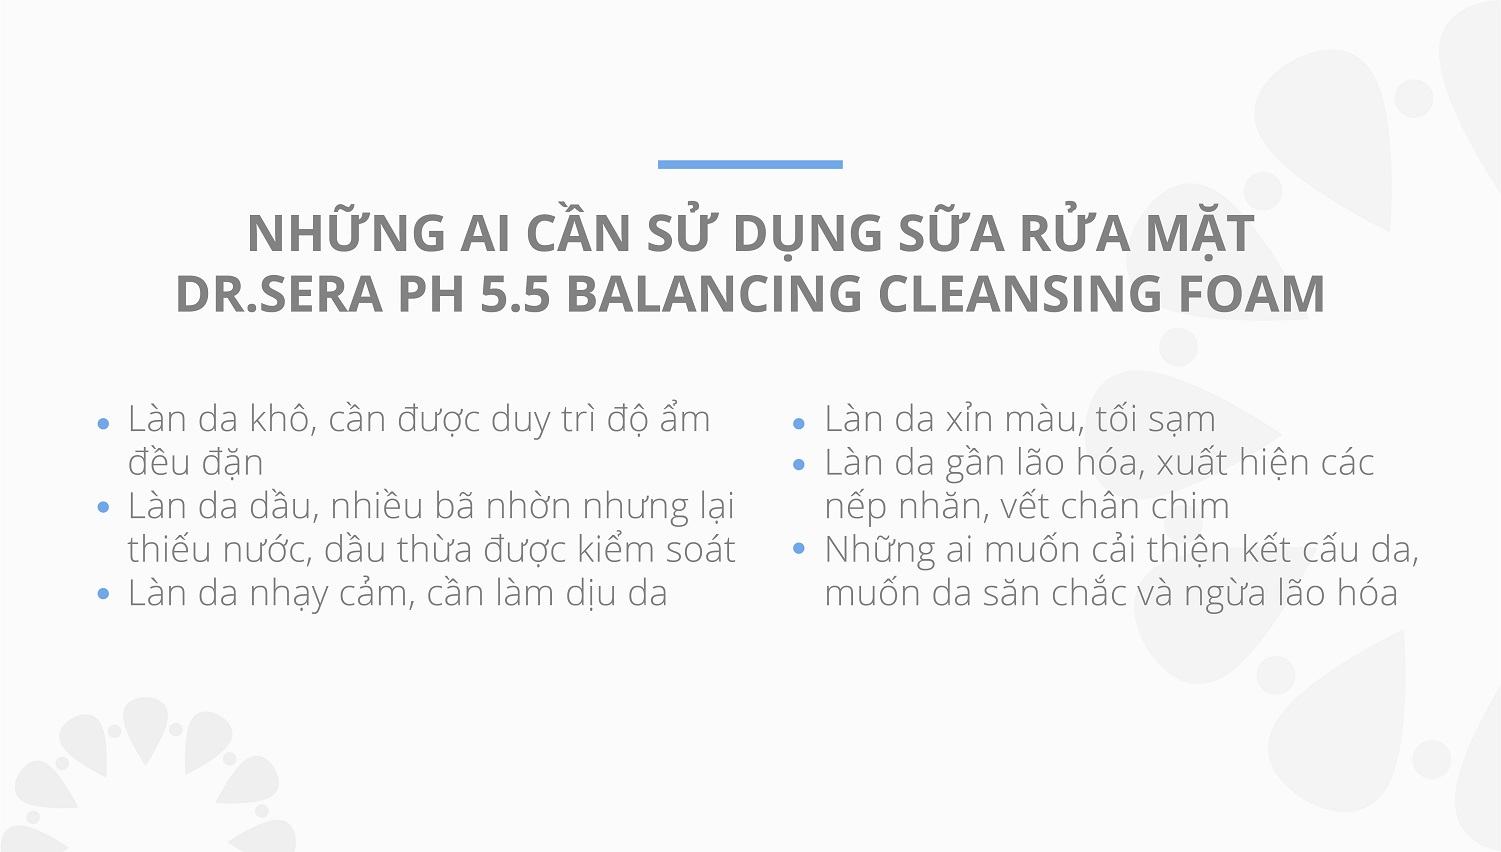 Dr.sera Ph 5.5 Balancing Cleansing Foam 06